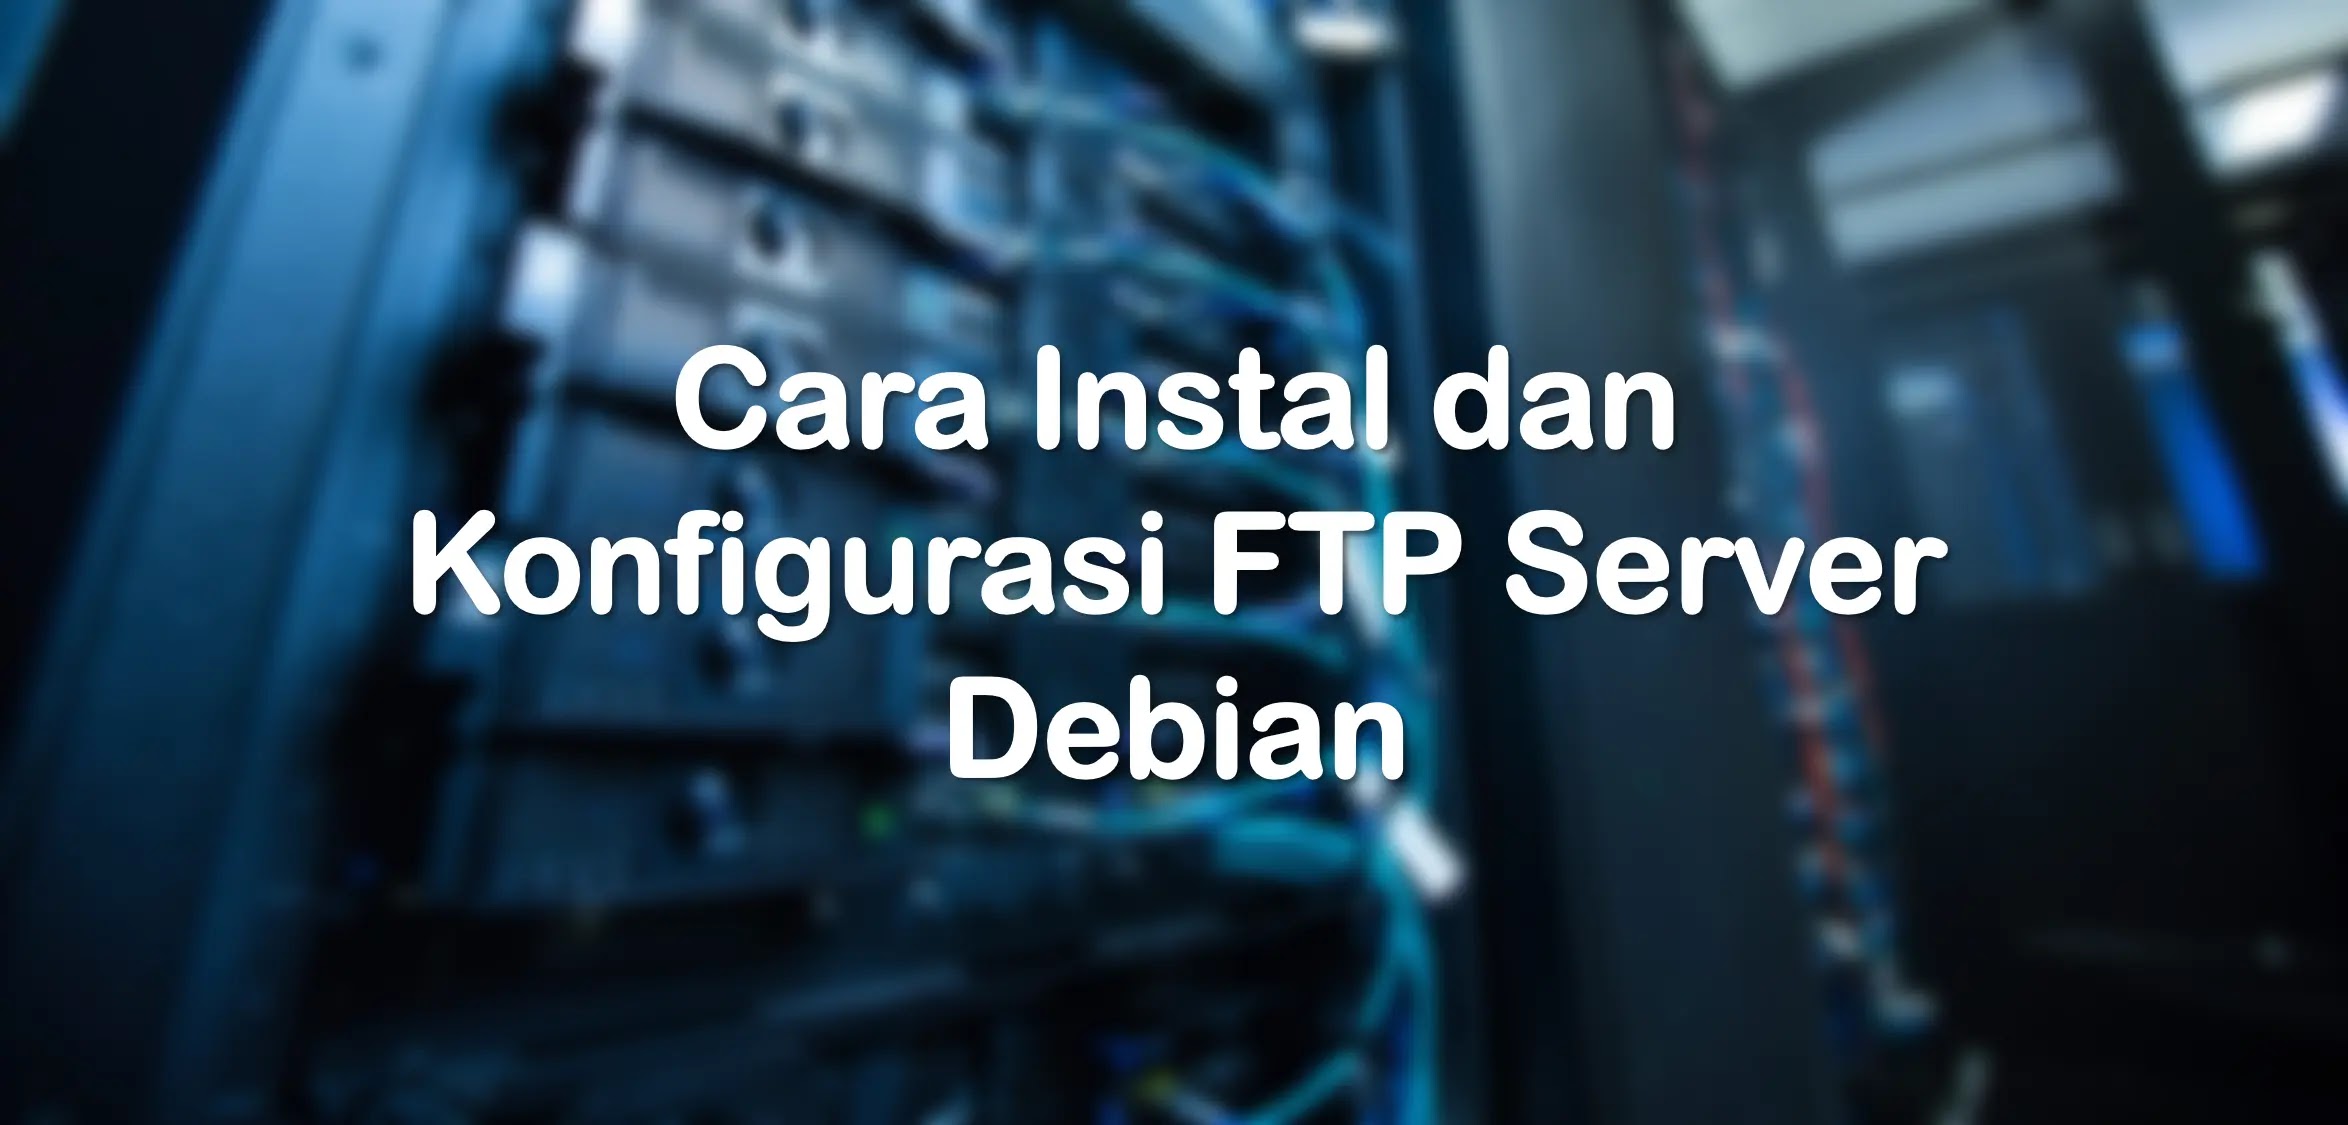 Cara Konfigurasi FTP Server